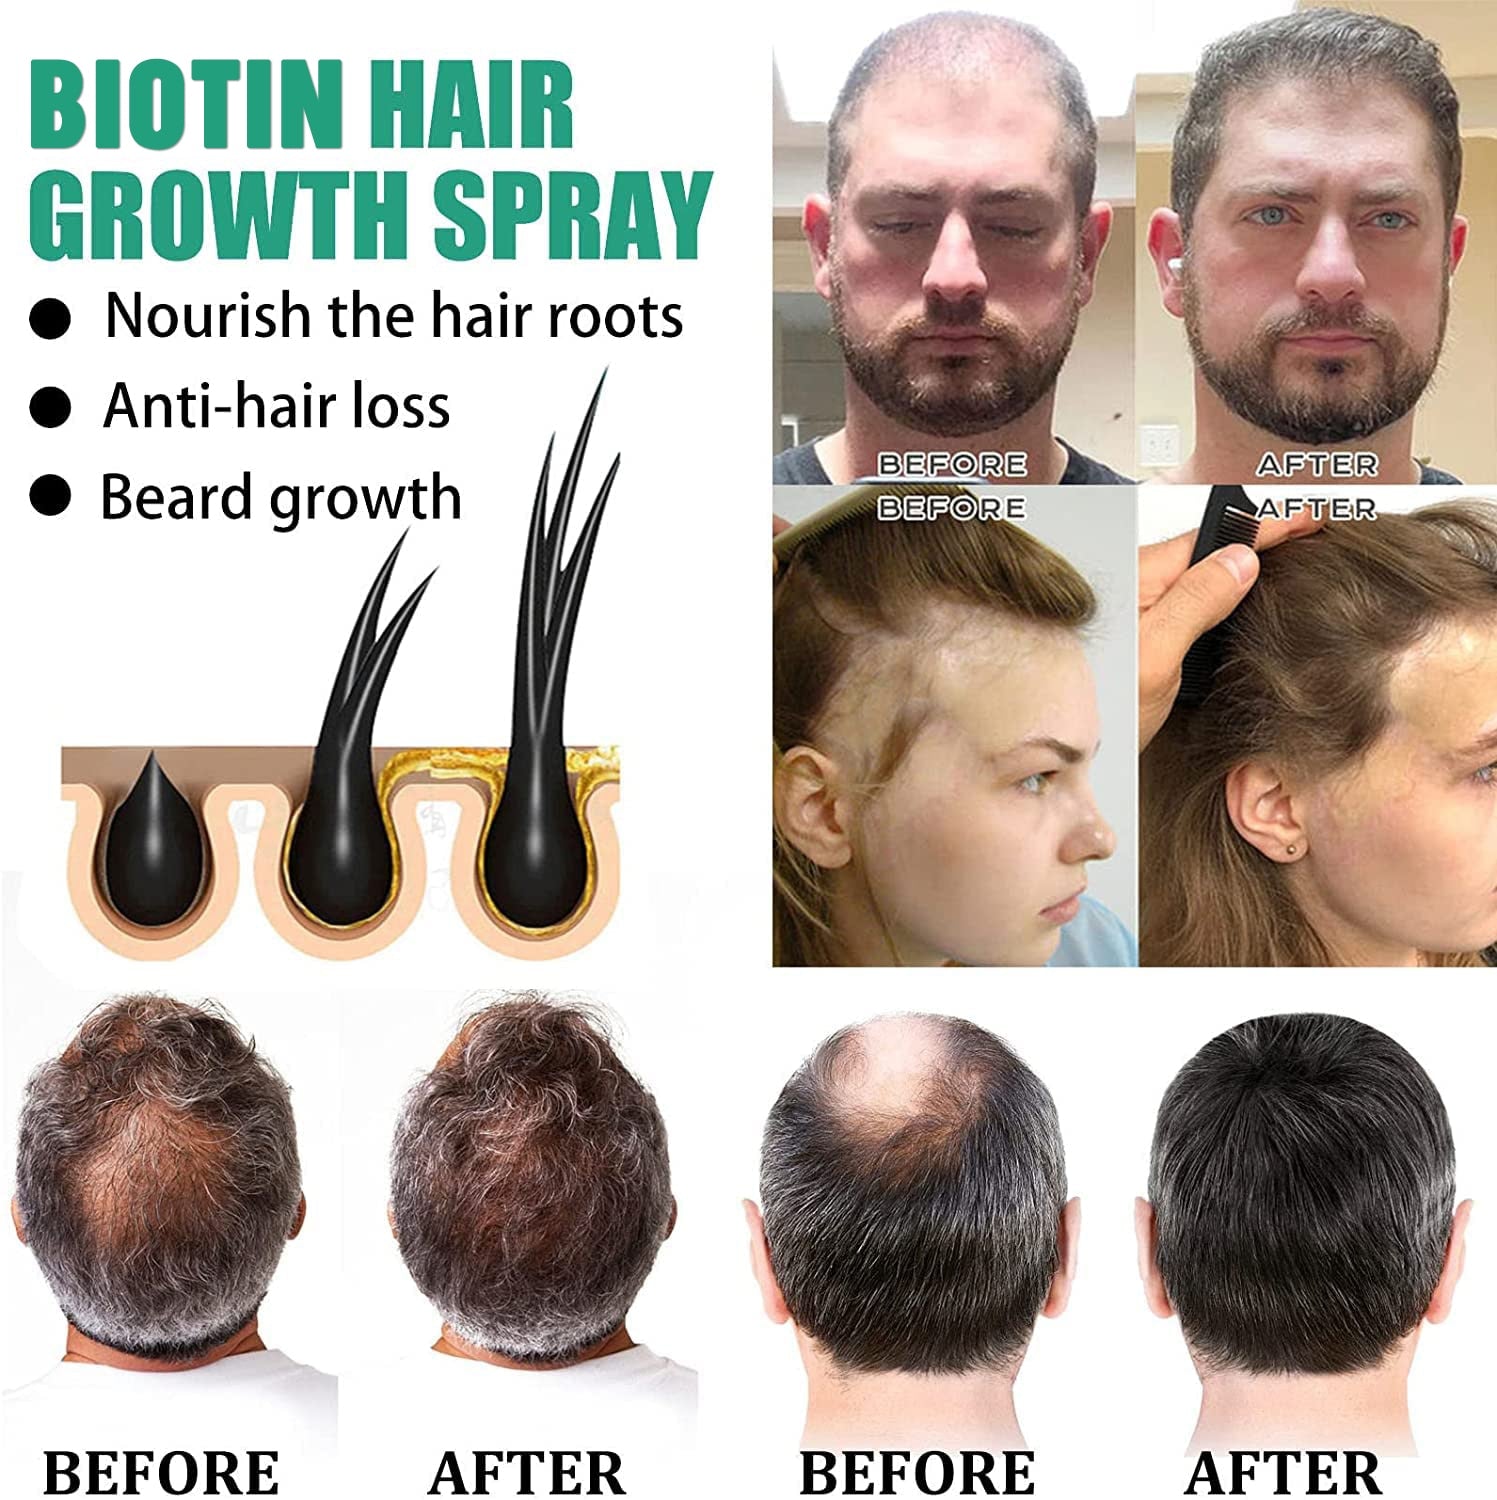 iBeaLee Biotin Hair Growth Serum